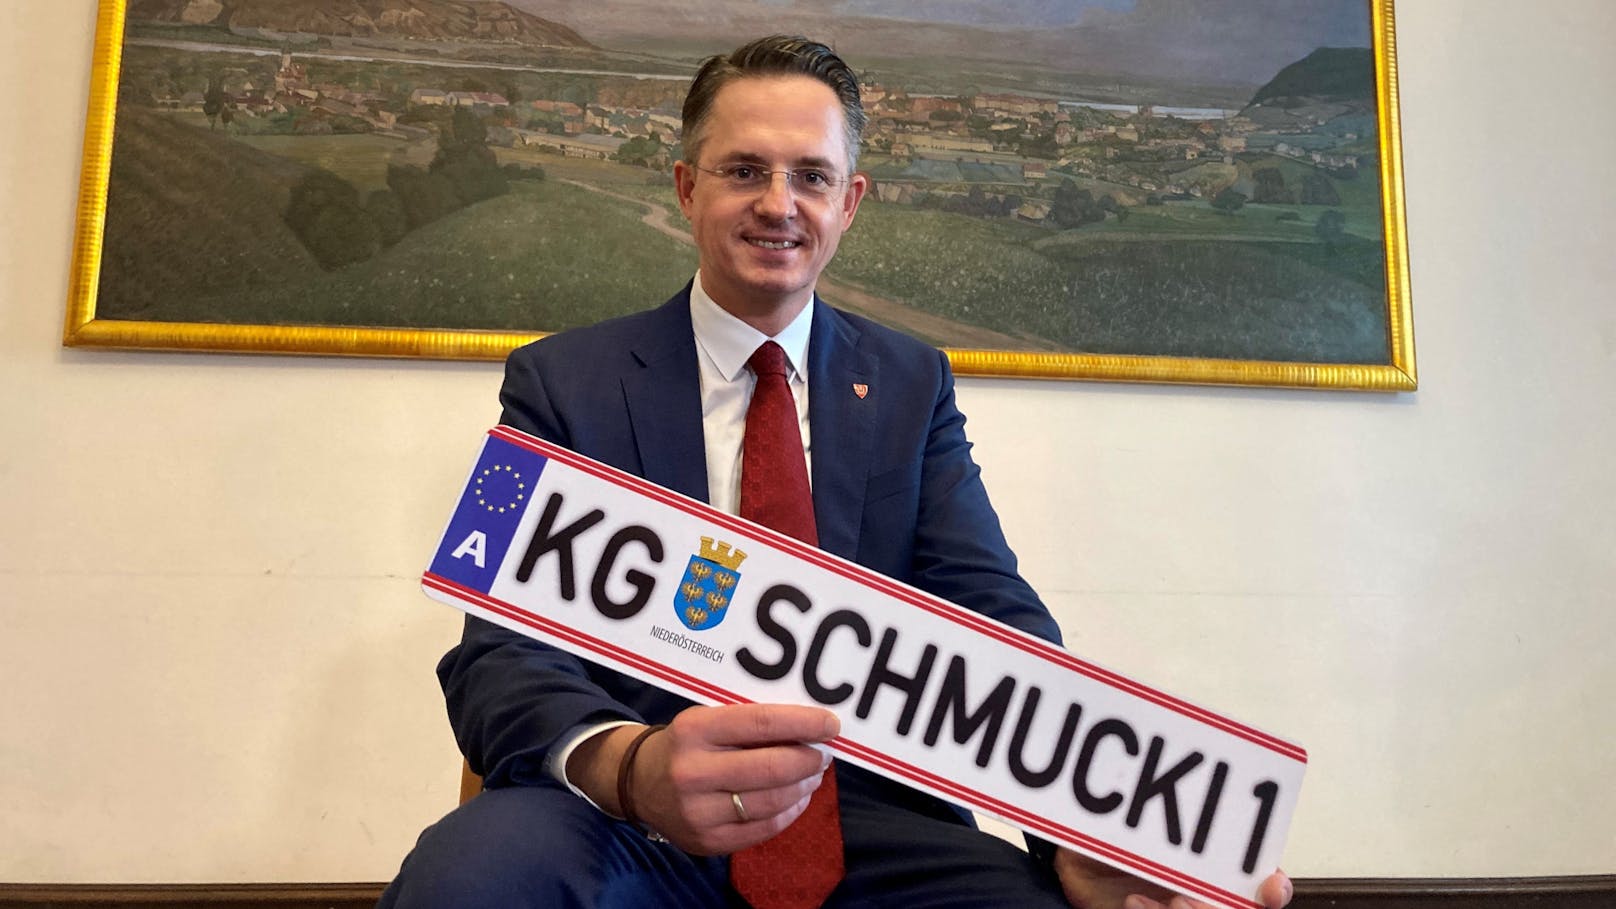 Nach 14 Jahren als Bürgermeister geht Stefan Schmuckenschlager jetzt in die Privatwirtschaft.